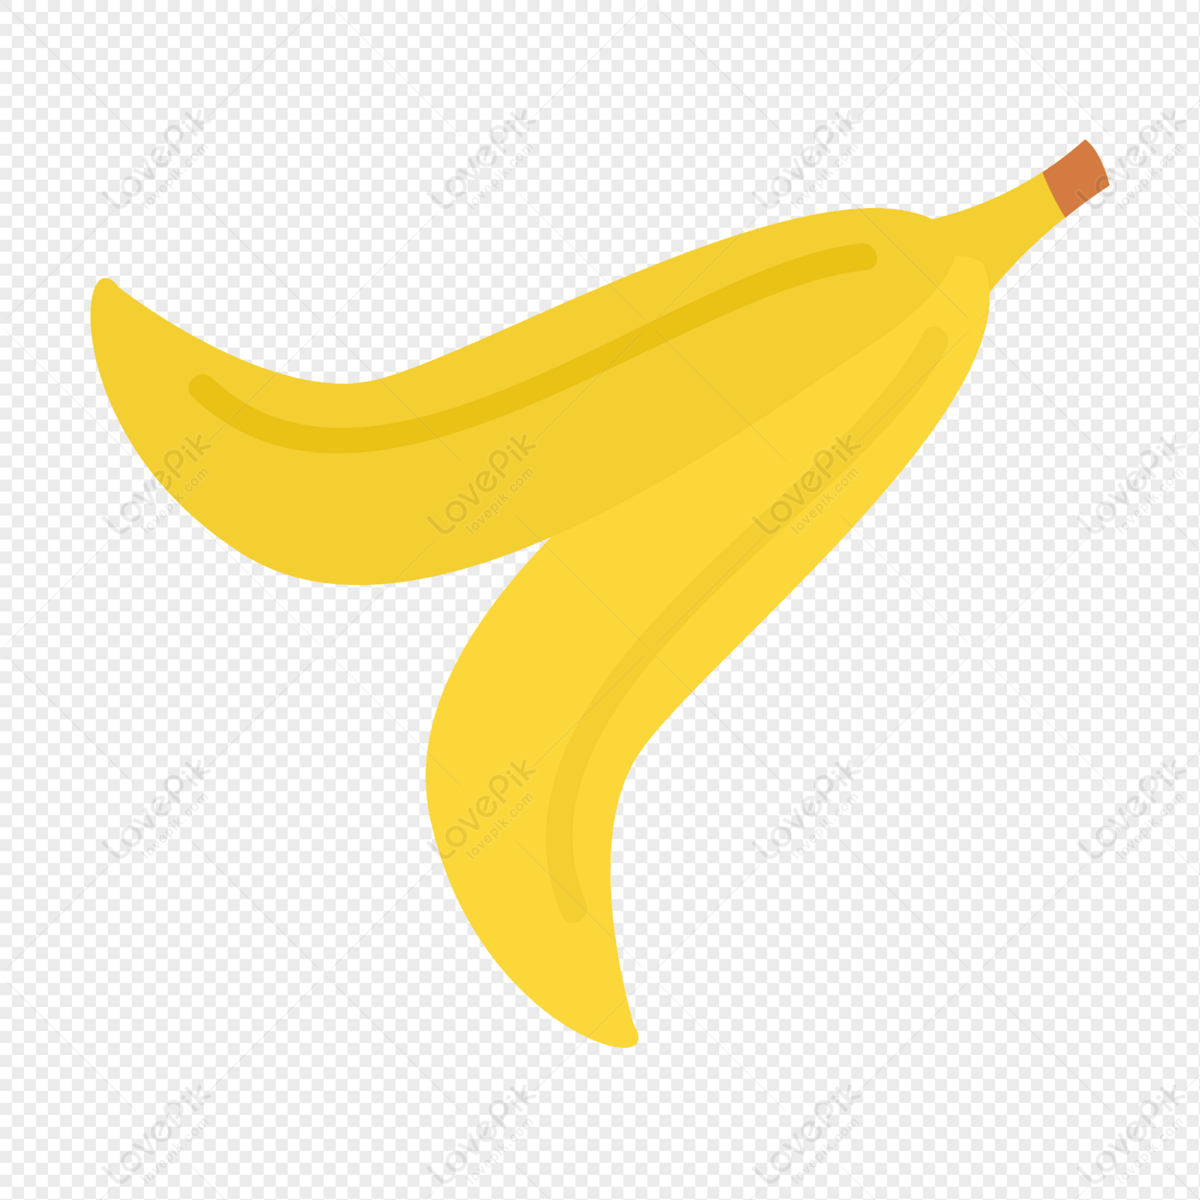 Banana Peel, Banana Skin, Peeling, Banana PNG Image Free Download And ...